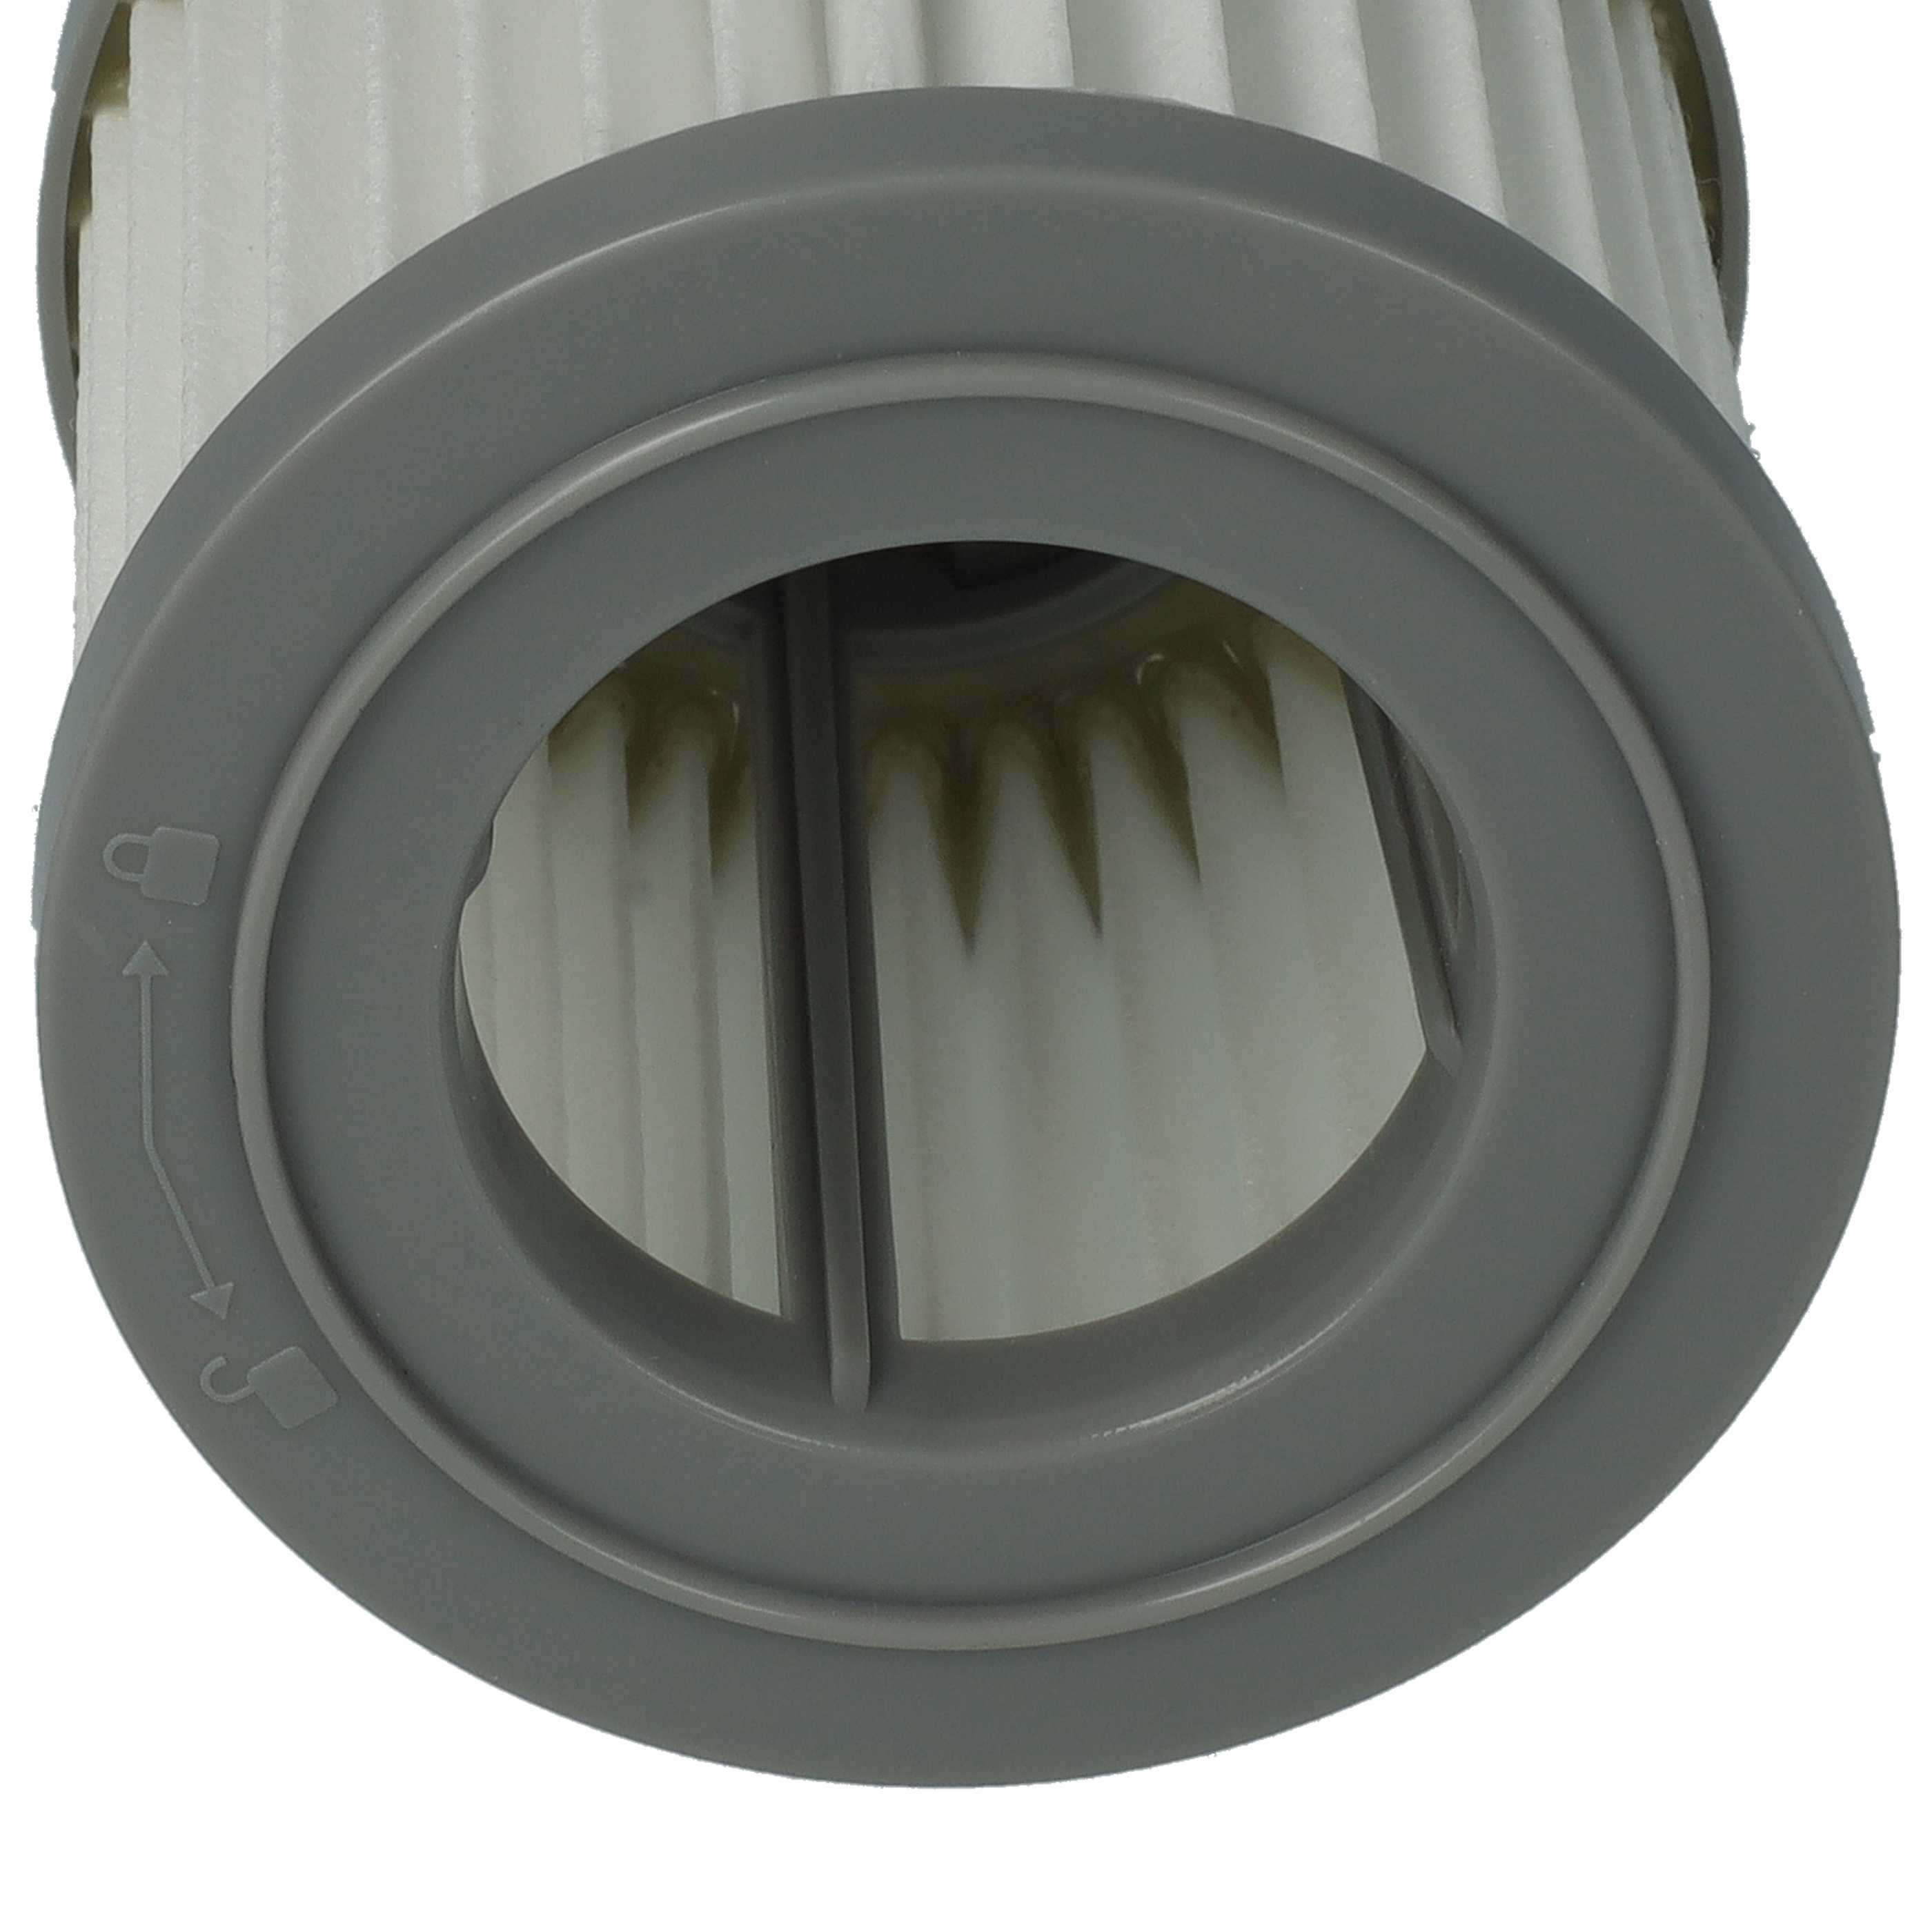 Filtr do odkurzacza AEG zamiennik AEG 4055453288 - filtr HEPA, biały / szary